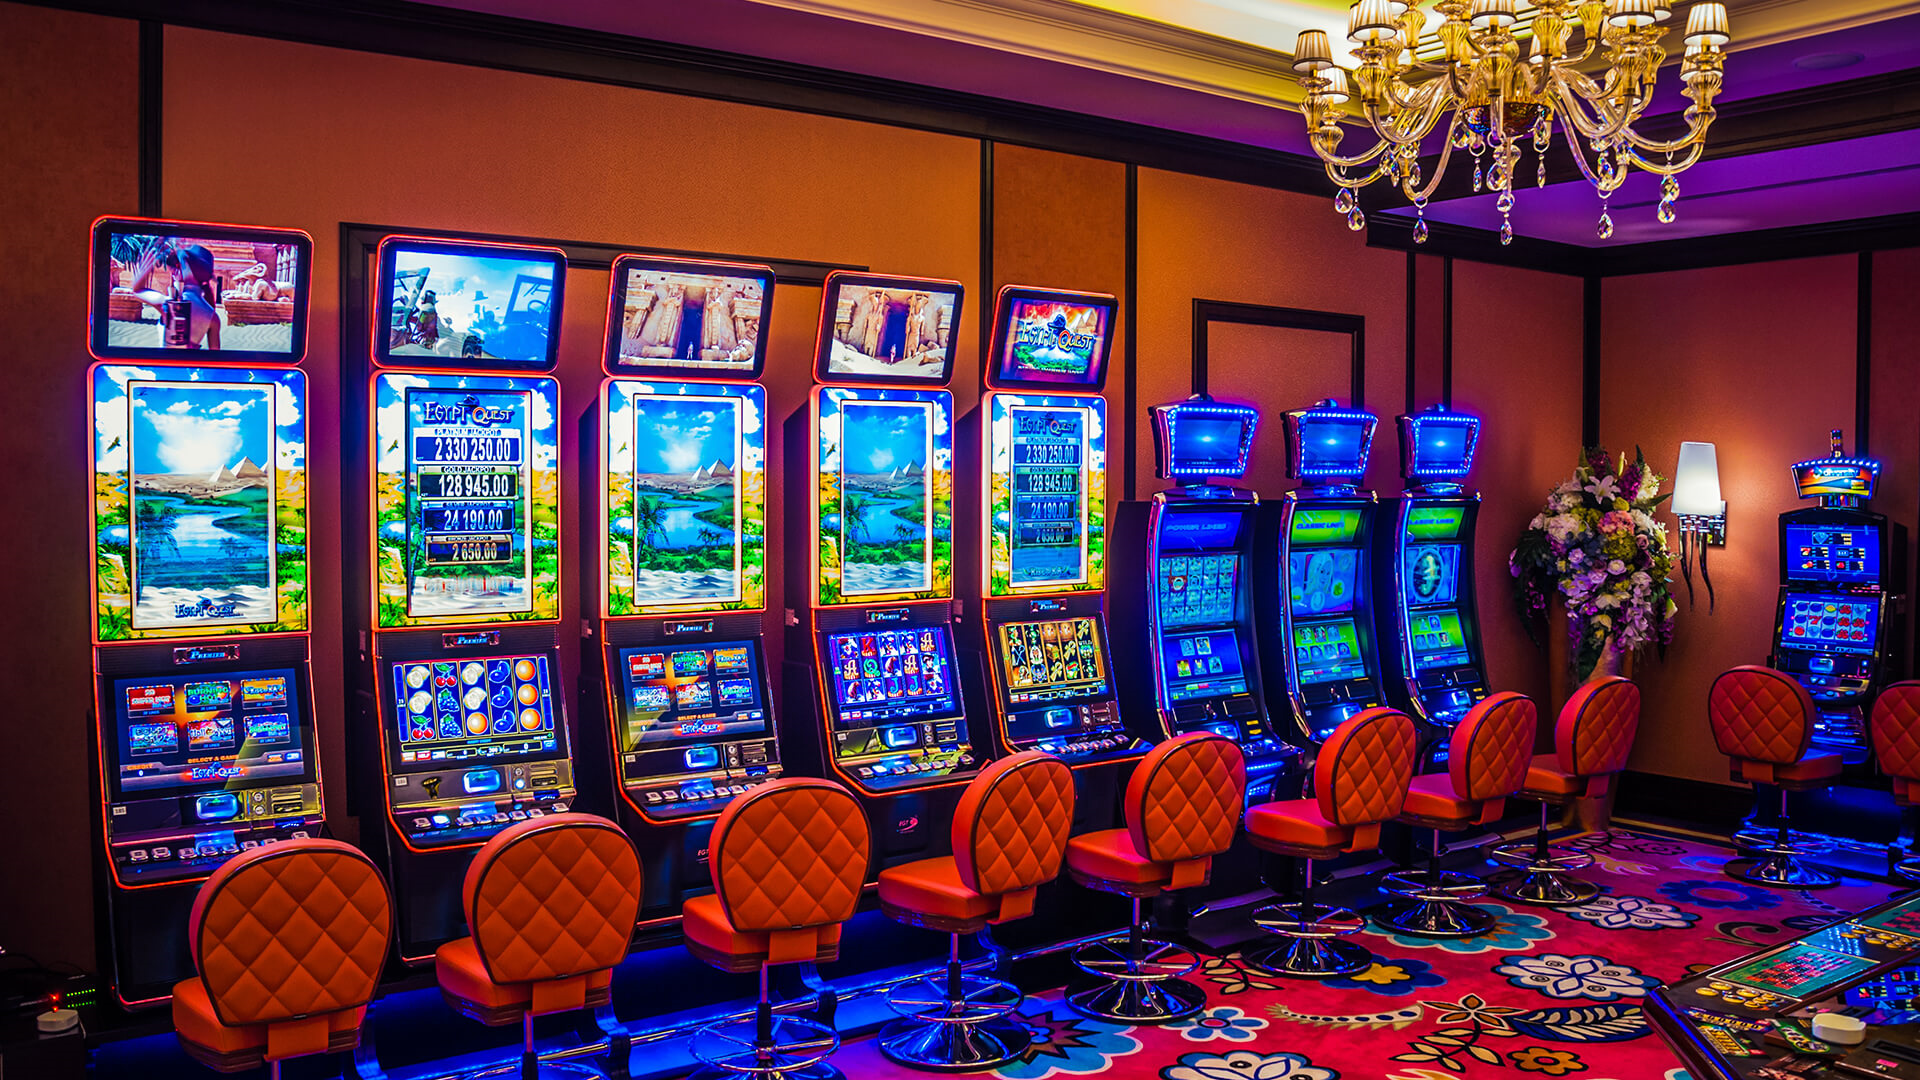 Клубника предлагает новый уровень онлайн-казино. Money Experiment